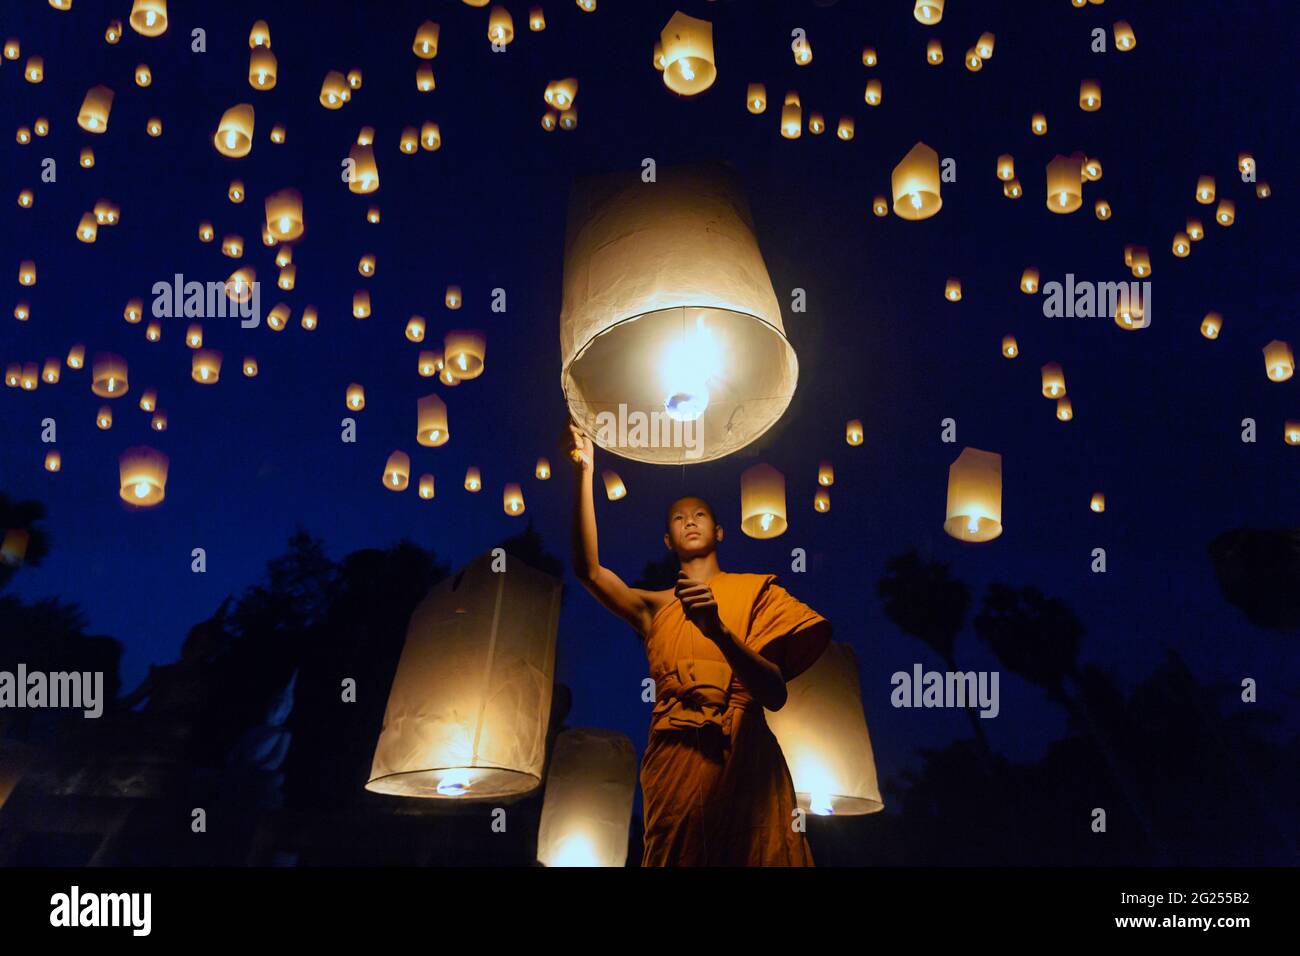 Monk bouddhiste libérant des lanternes dans le ciel la nuit, Thaïlande Banque D'Images